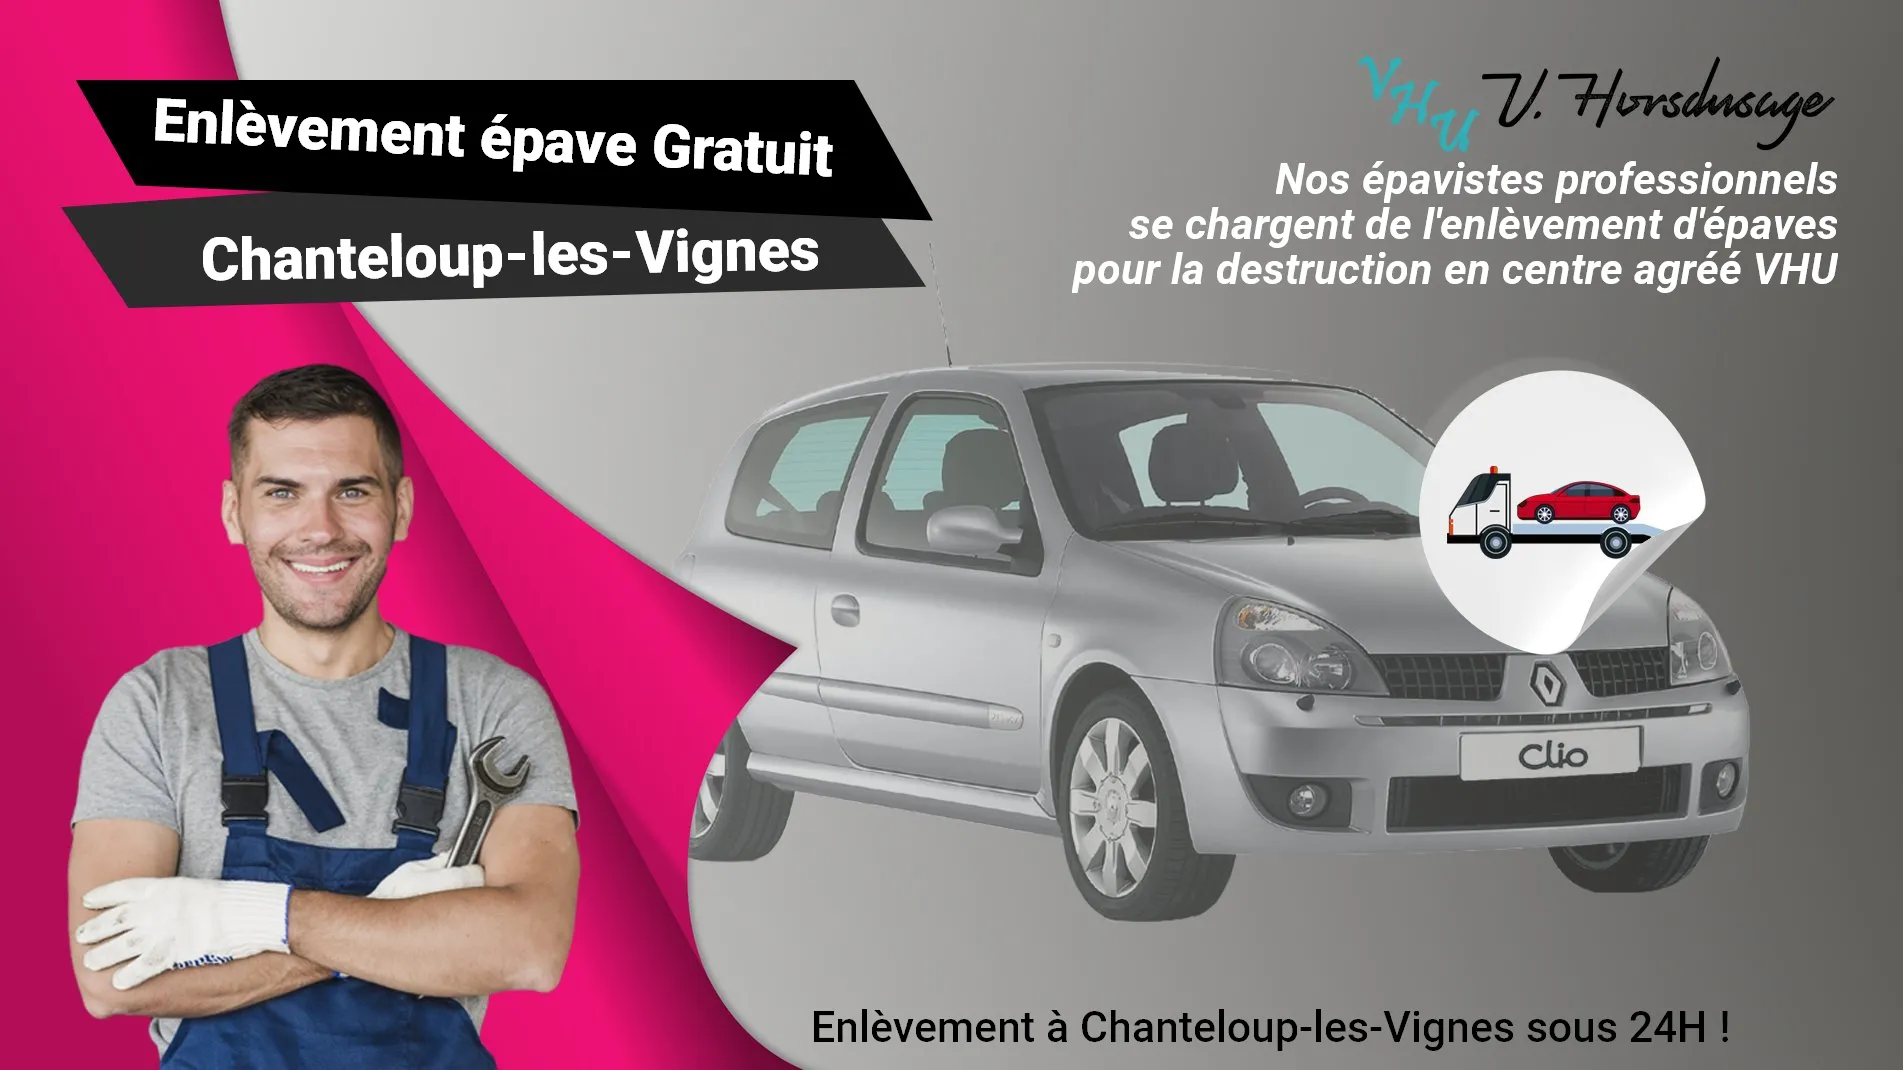 Pour un enlèvement gratuit à Chanteloup-les-Vignes, contactez nos épavistes agréé VHU